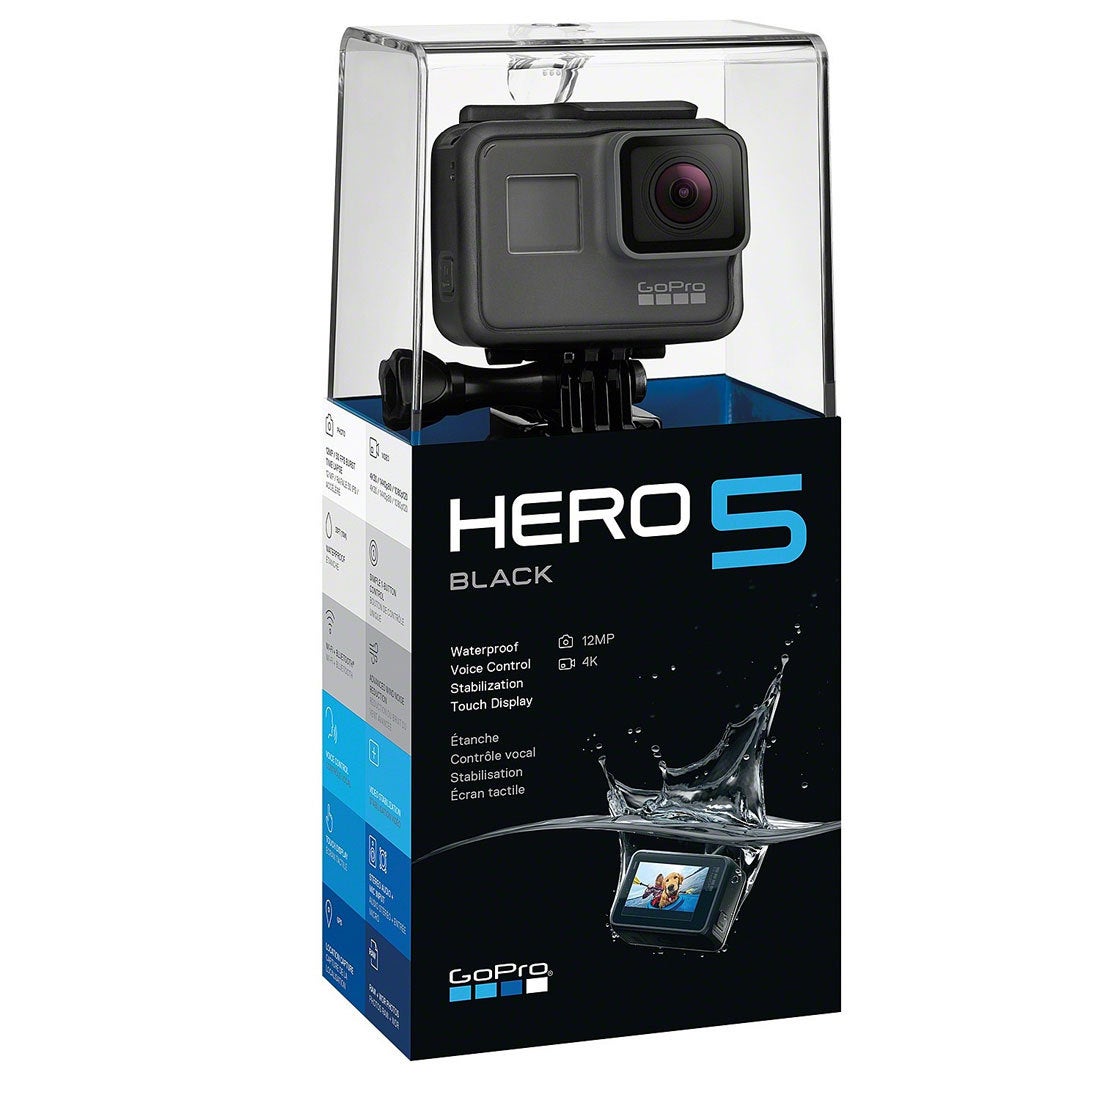 ゴープロ GoPro HERO5 ブラック(国内正規保証品) CHDHX-501 【返品不可